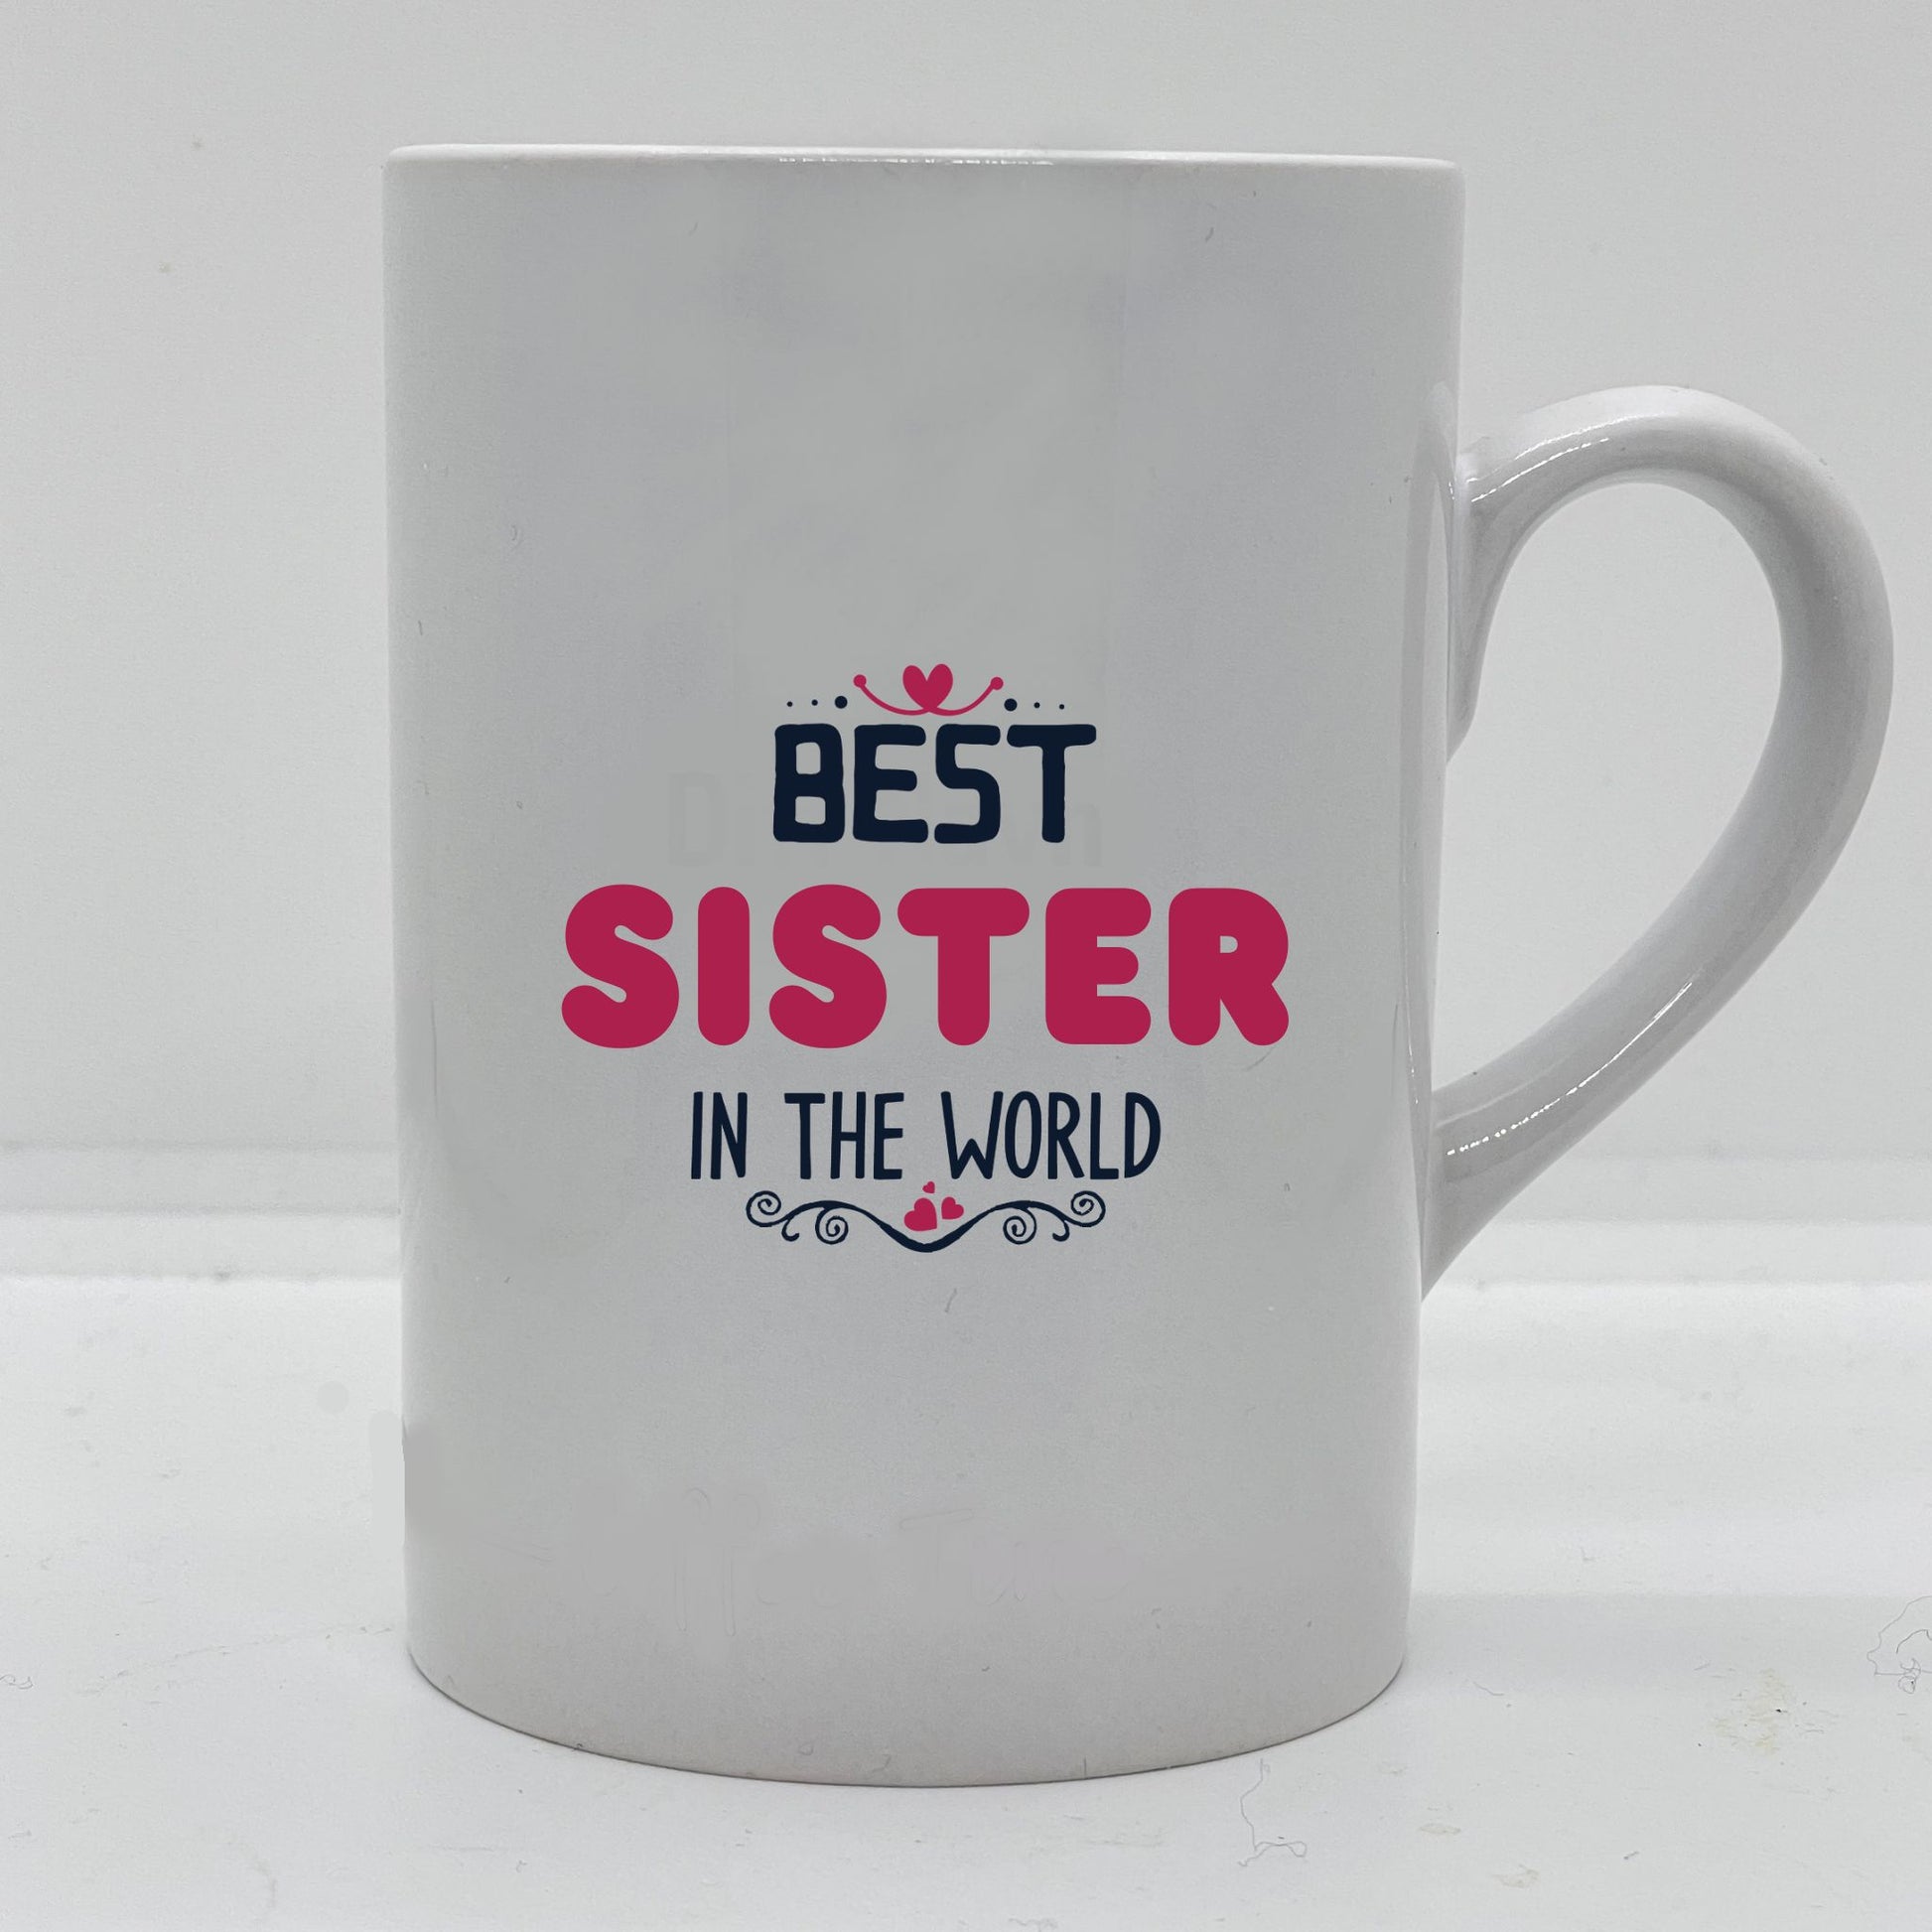 Krus i hvit keramikk med påskrift "Best sister in the world" på en side, og tre hjerter på motsatt side. Trykk i sort og rosa.